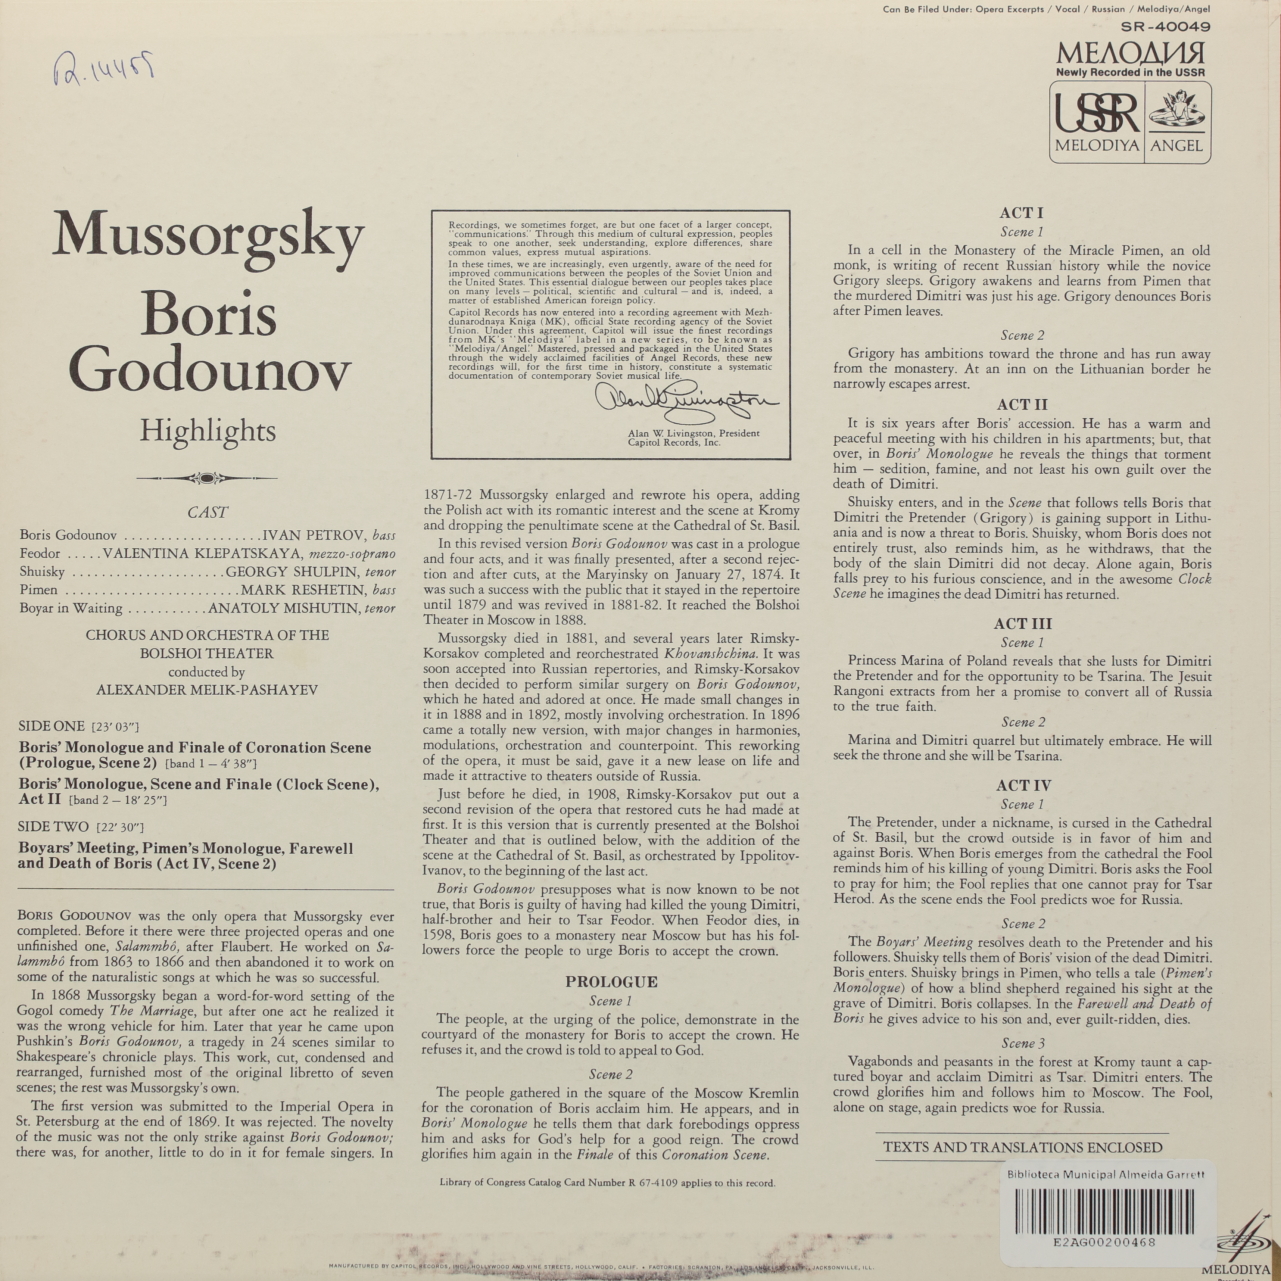 Mussorgsky: Boris Godunov Highlights